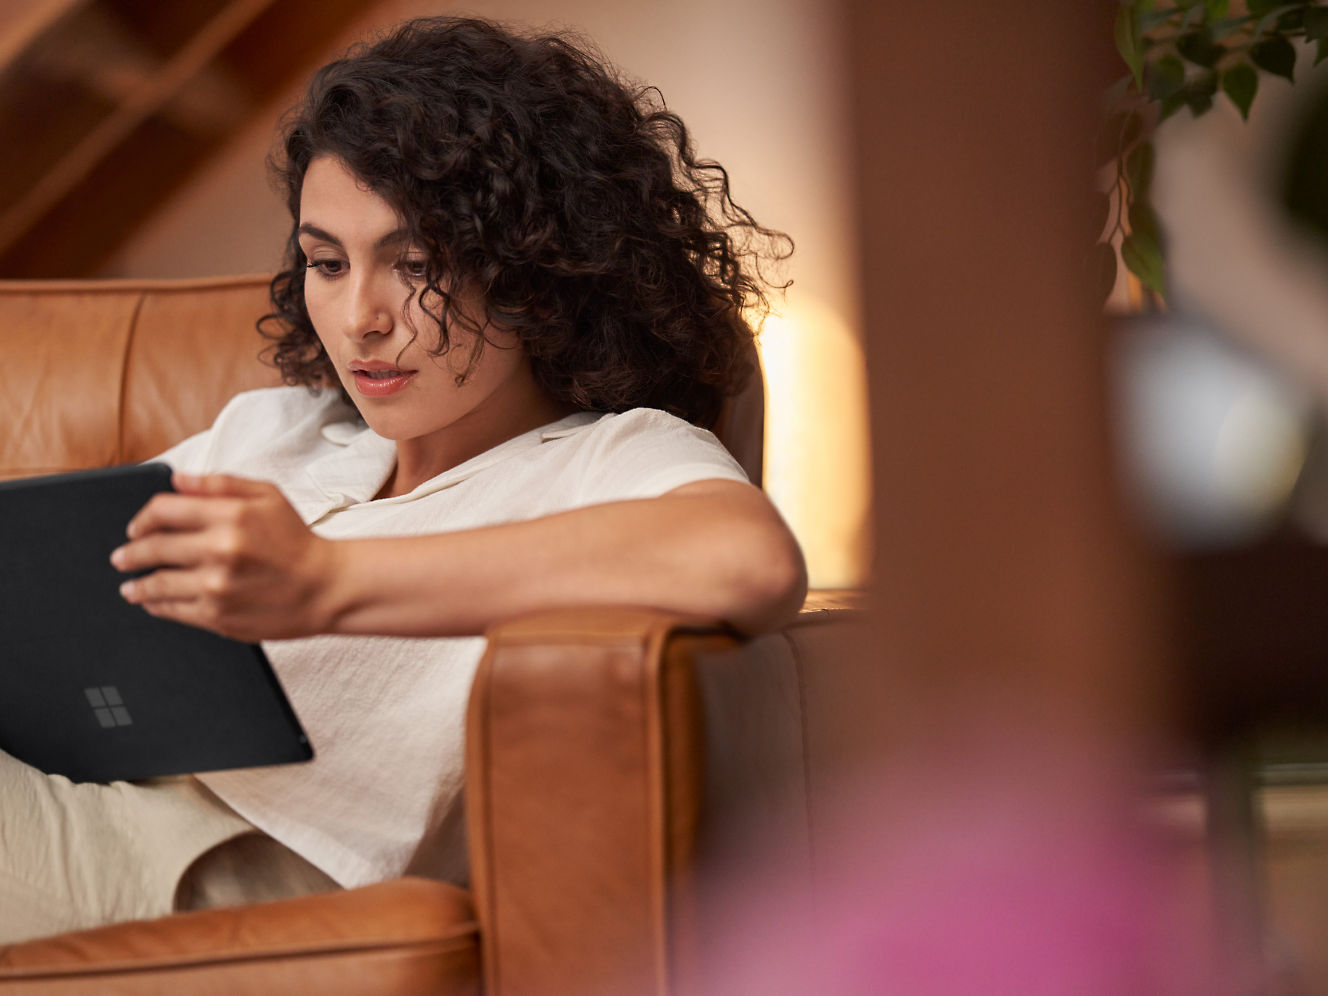 Mujer con el pelo rizado tratando de leer en una tableta mientras está sentada en un sillón de piel marrón interior.